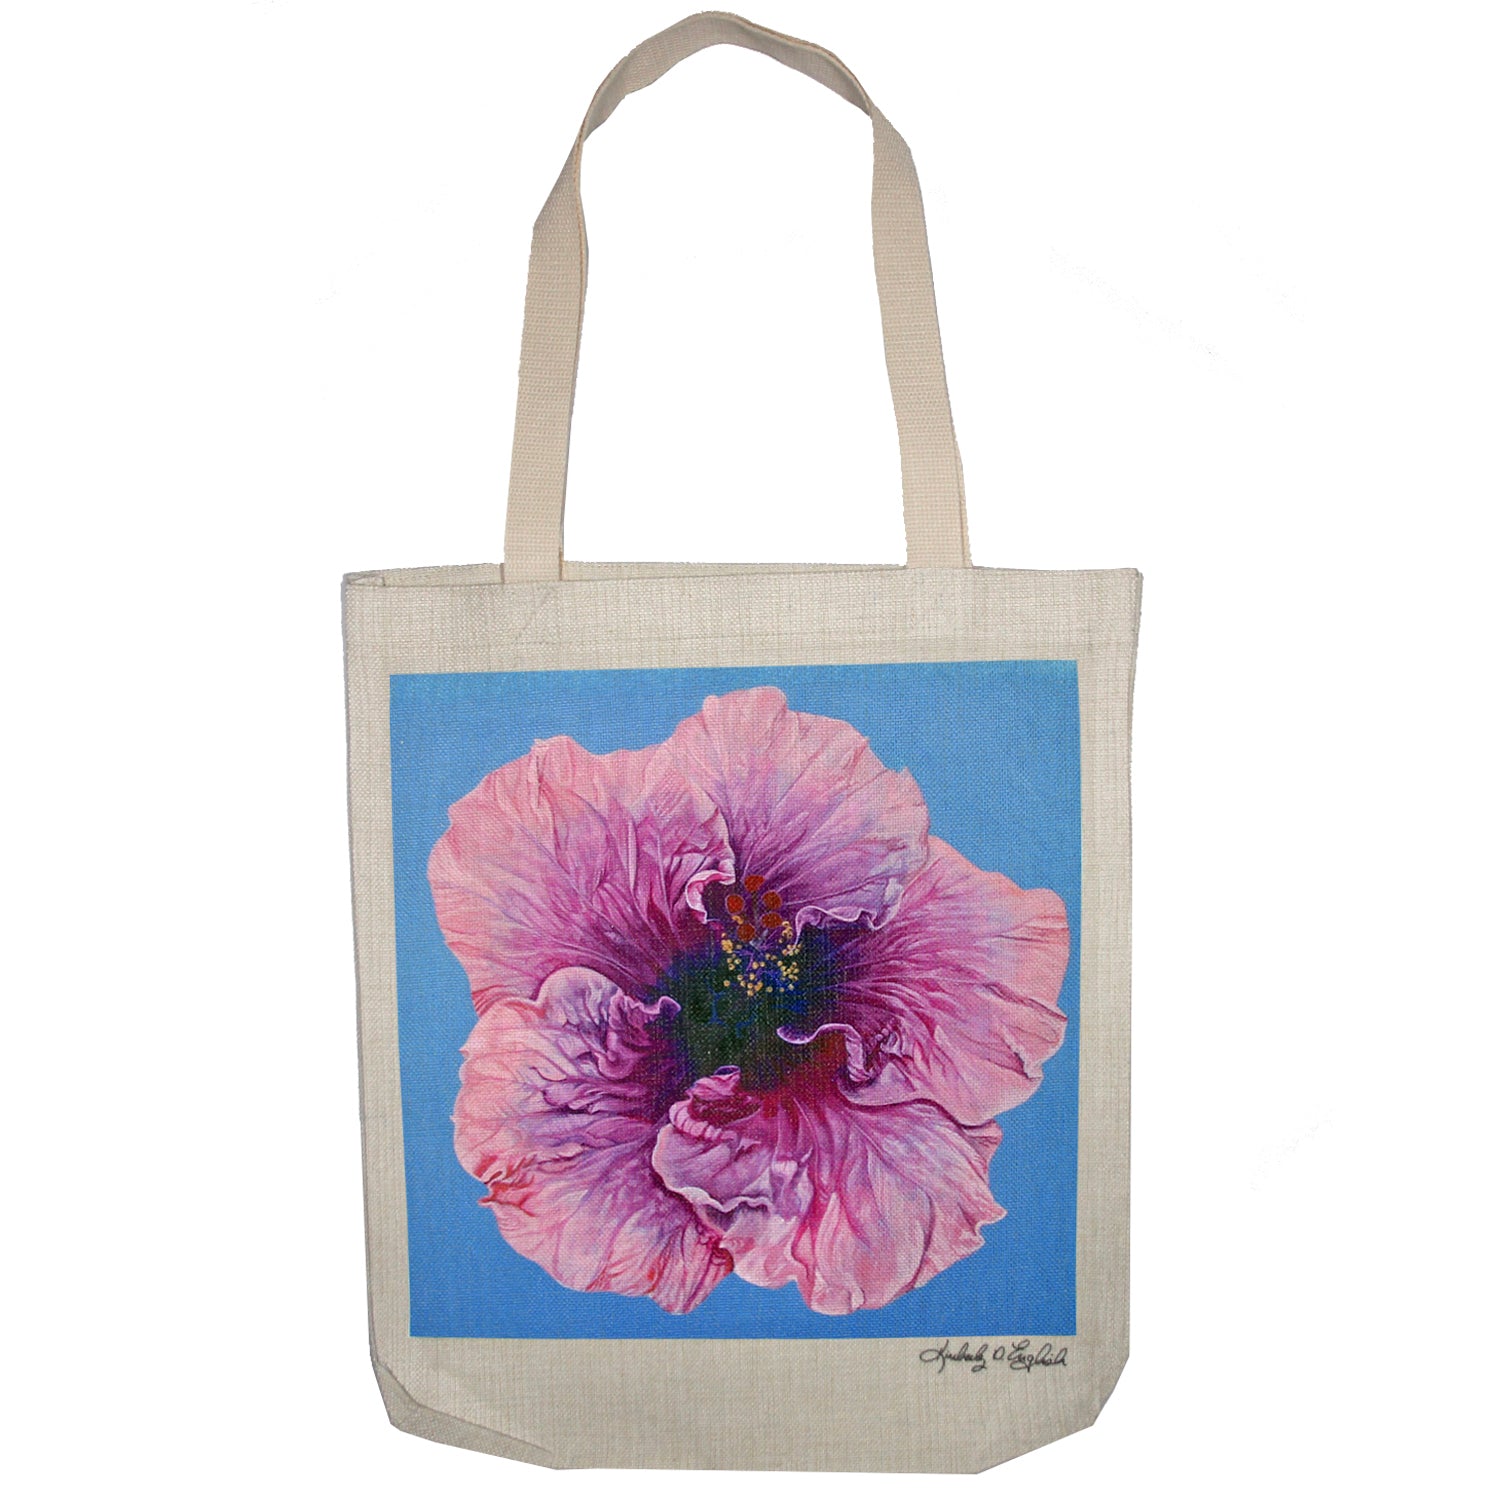 Blossom' Tote Bag